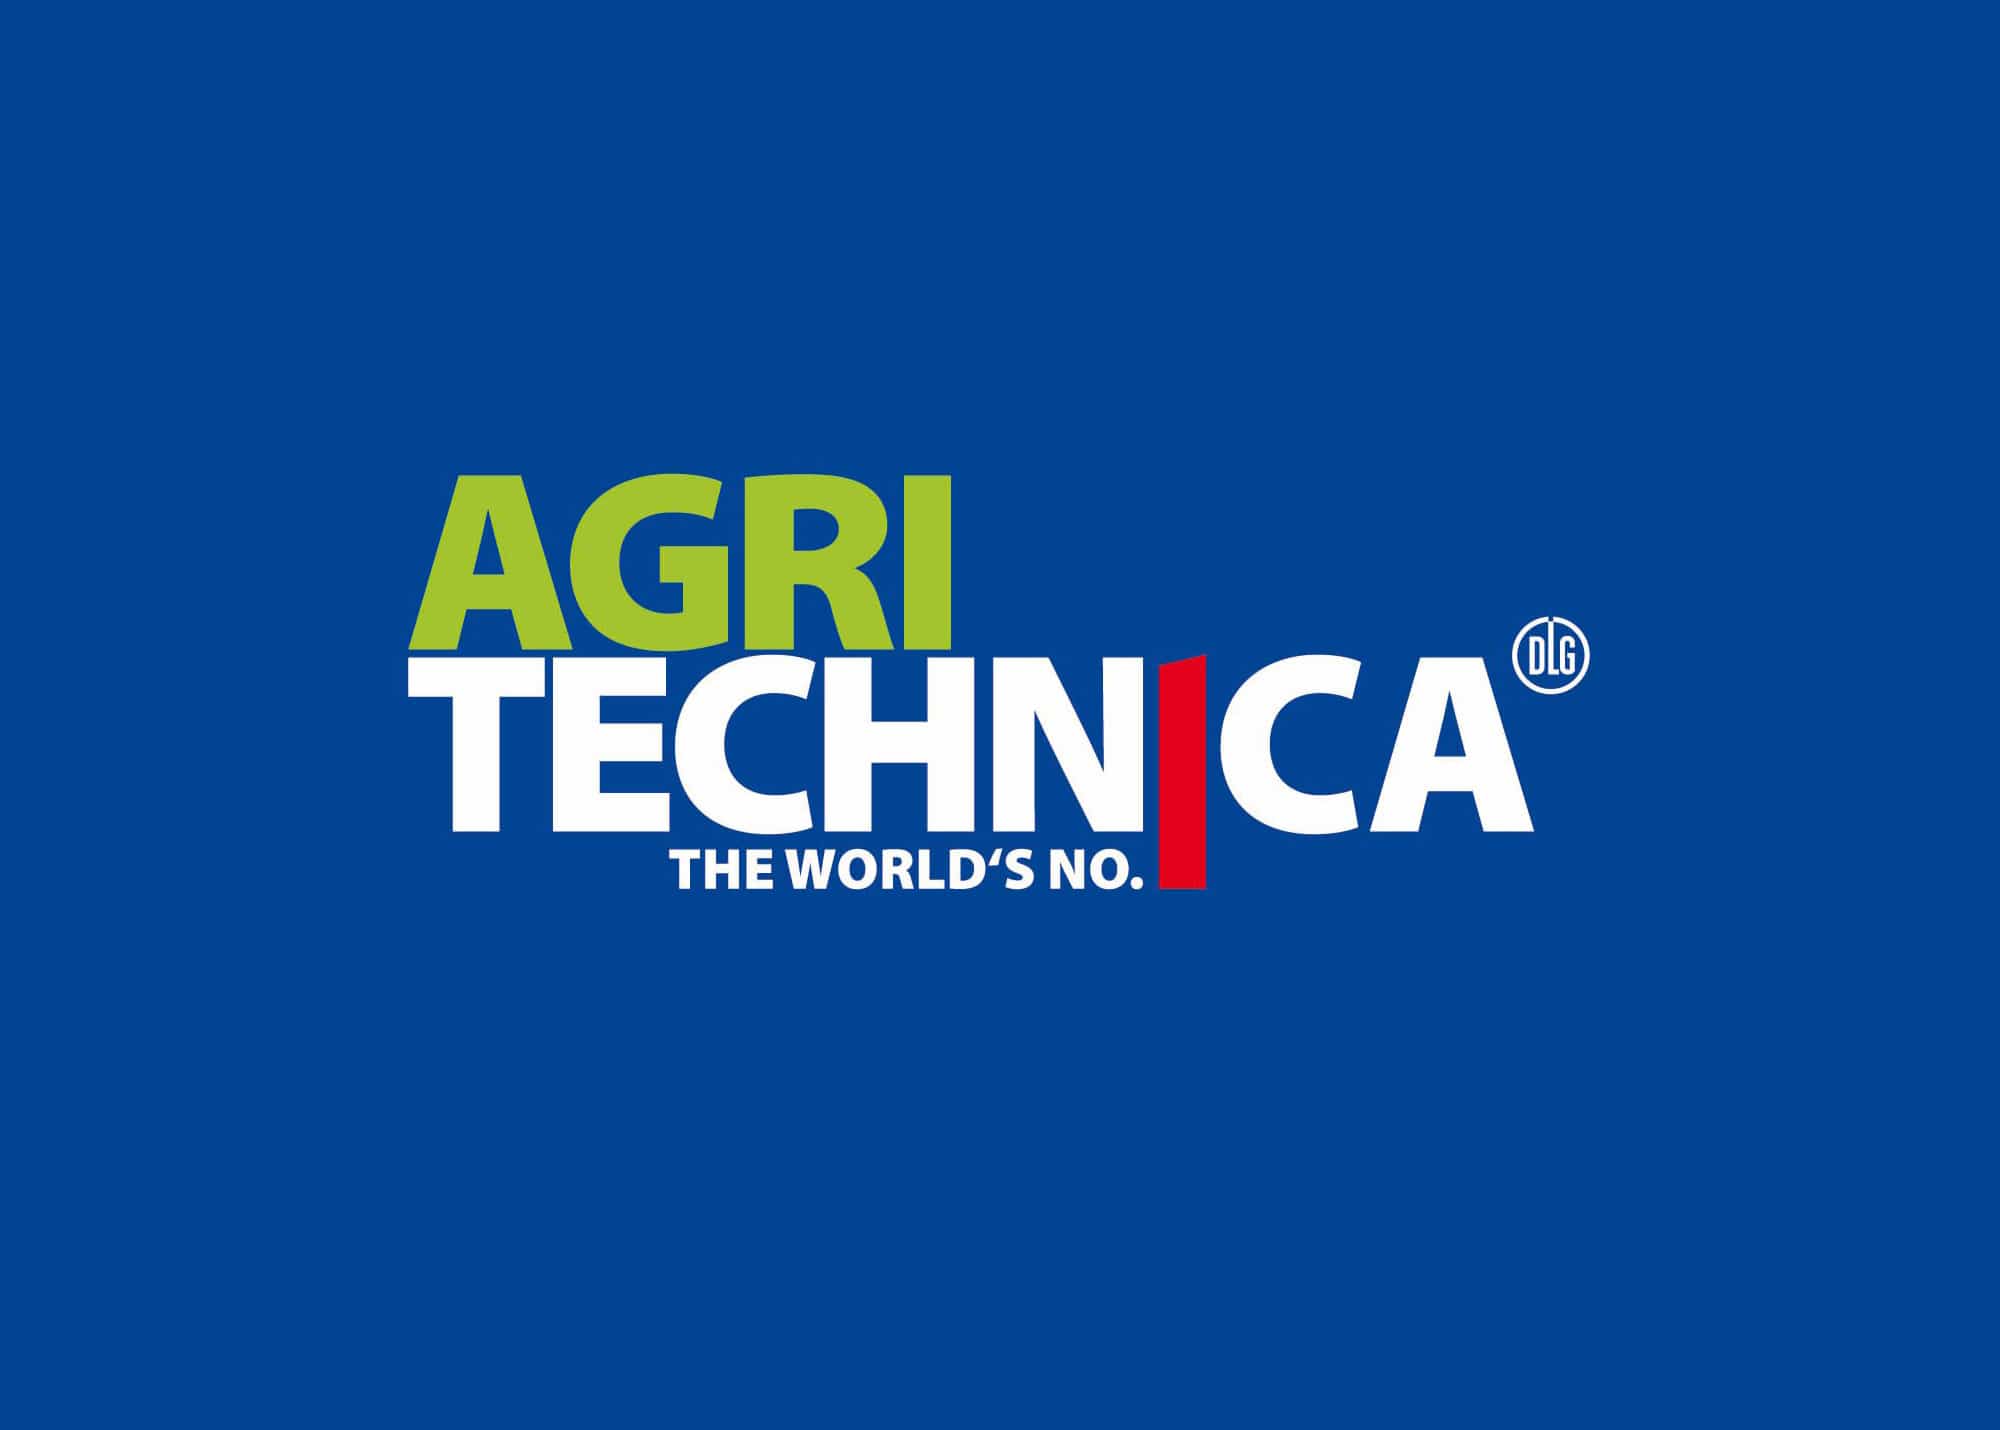 Besu­chen Sie uns auf der Agri­tech­ni­ca 2019